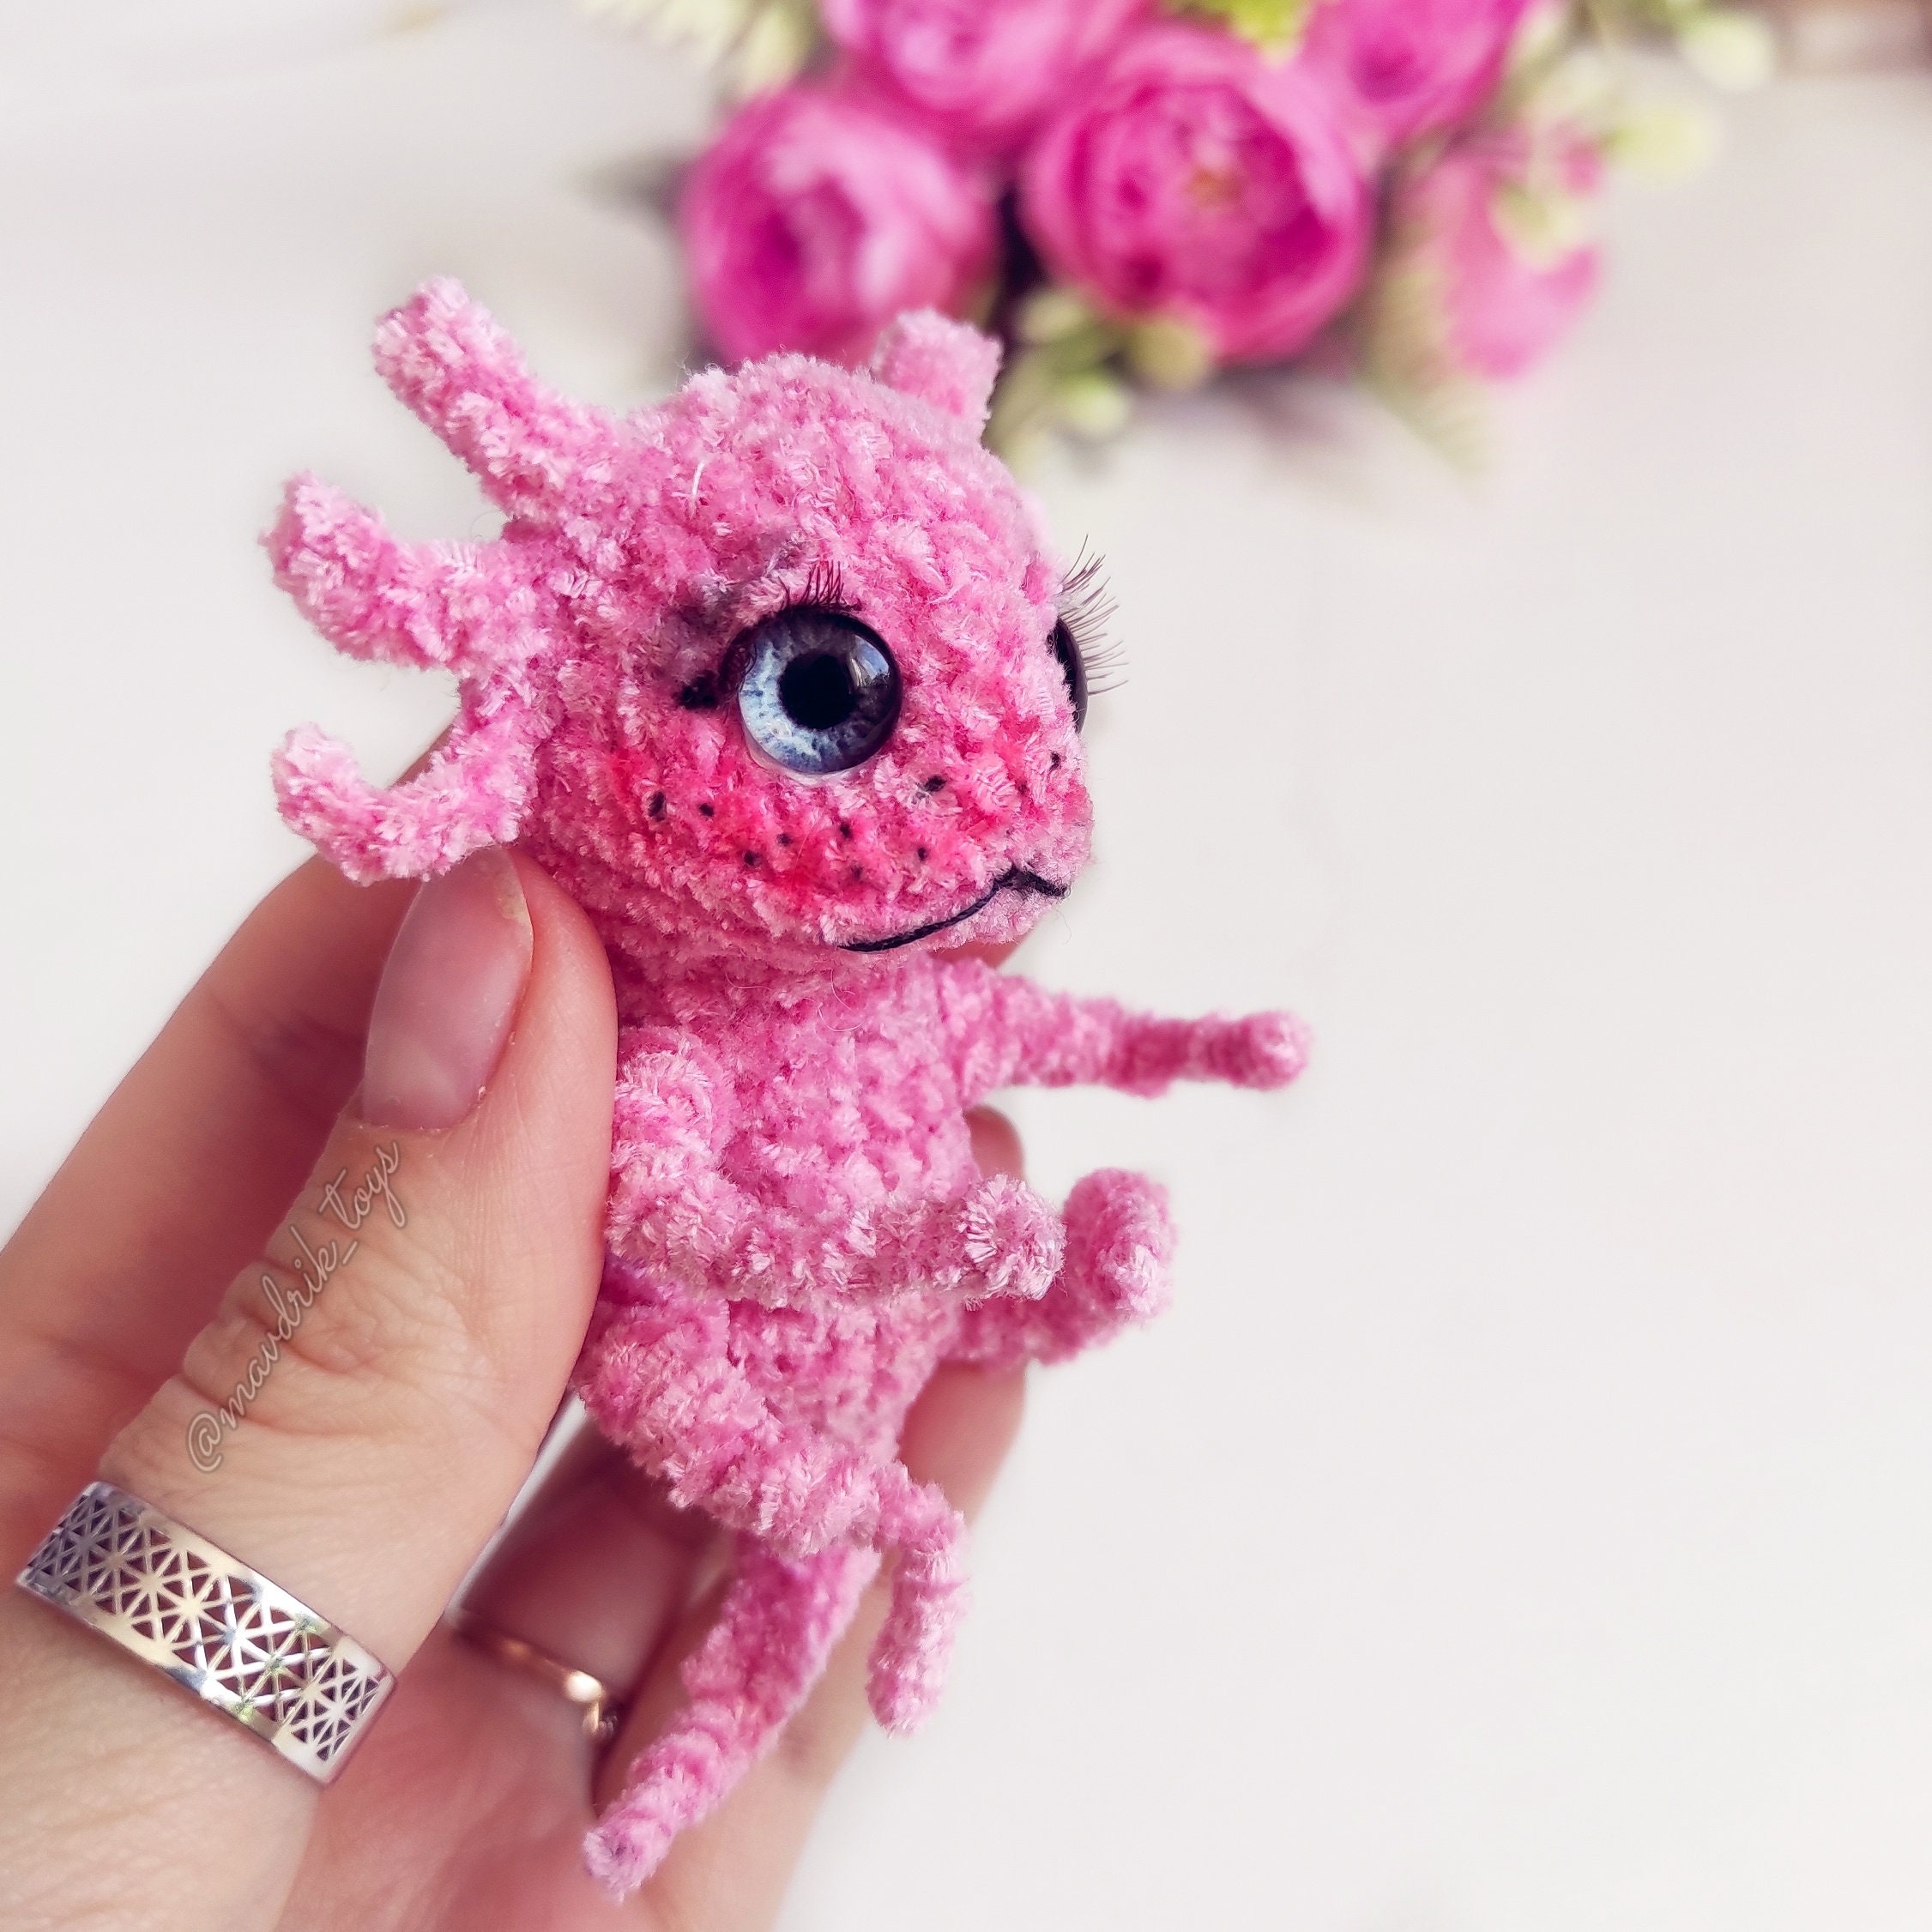 Pattern Axolotl Crochet DIY Tutorial in English | Etsy